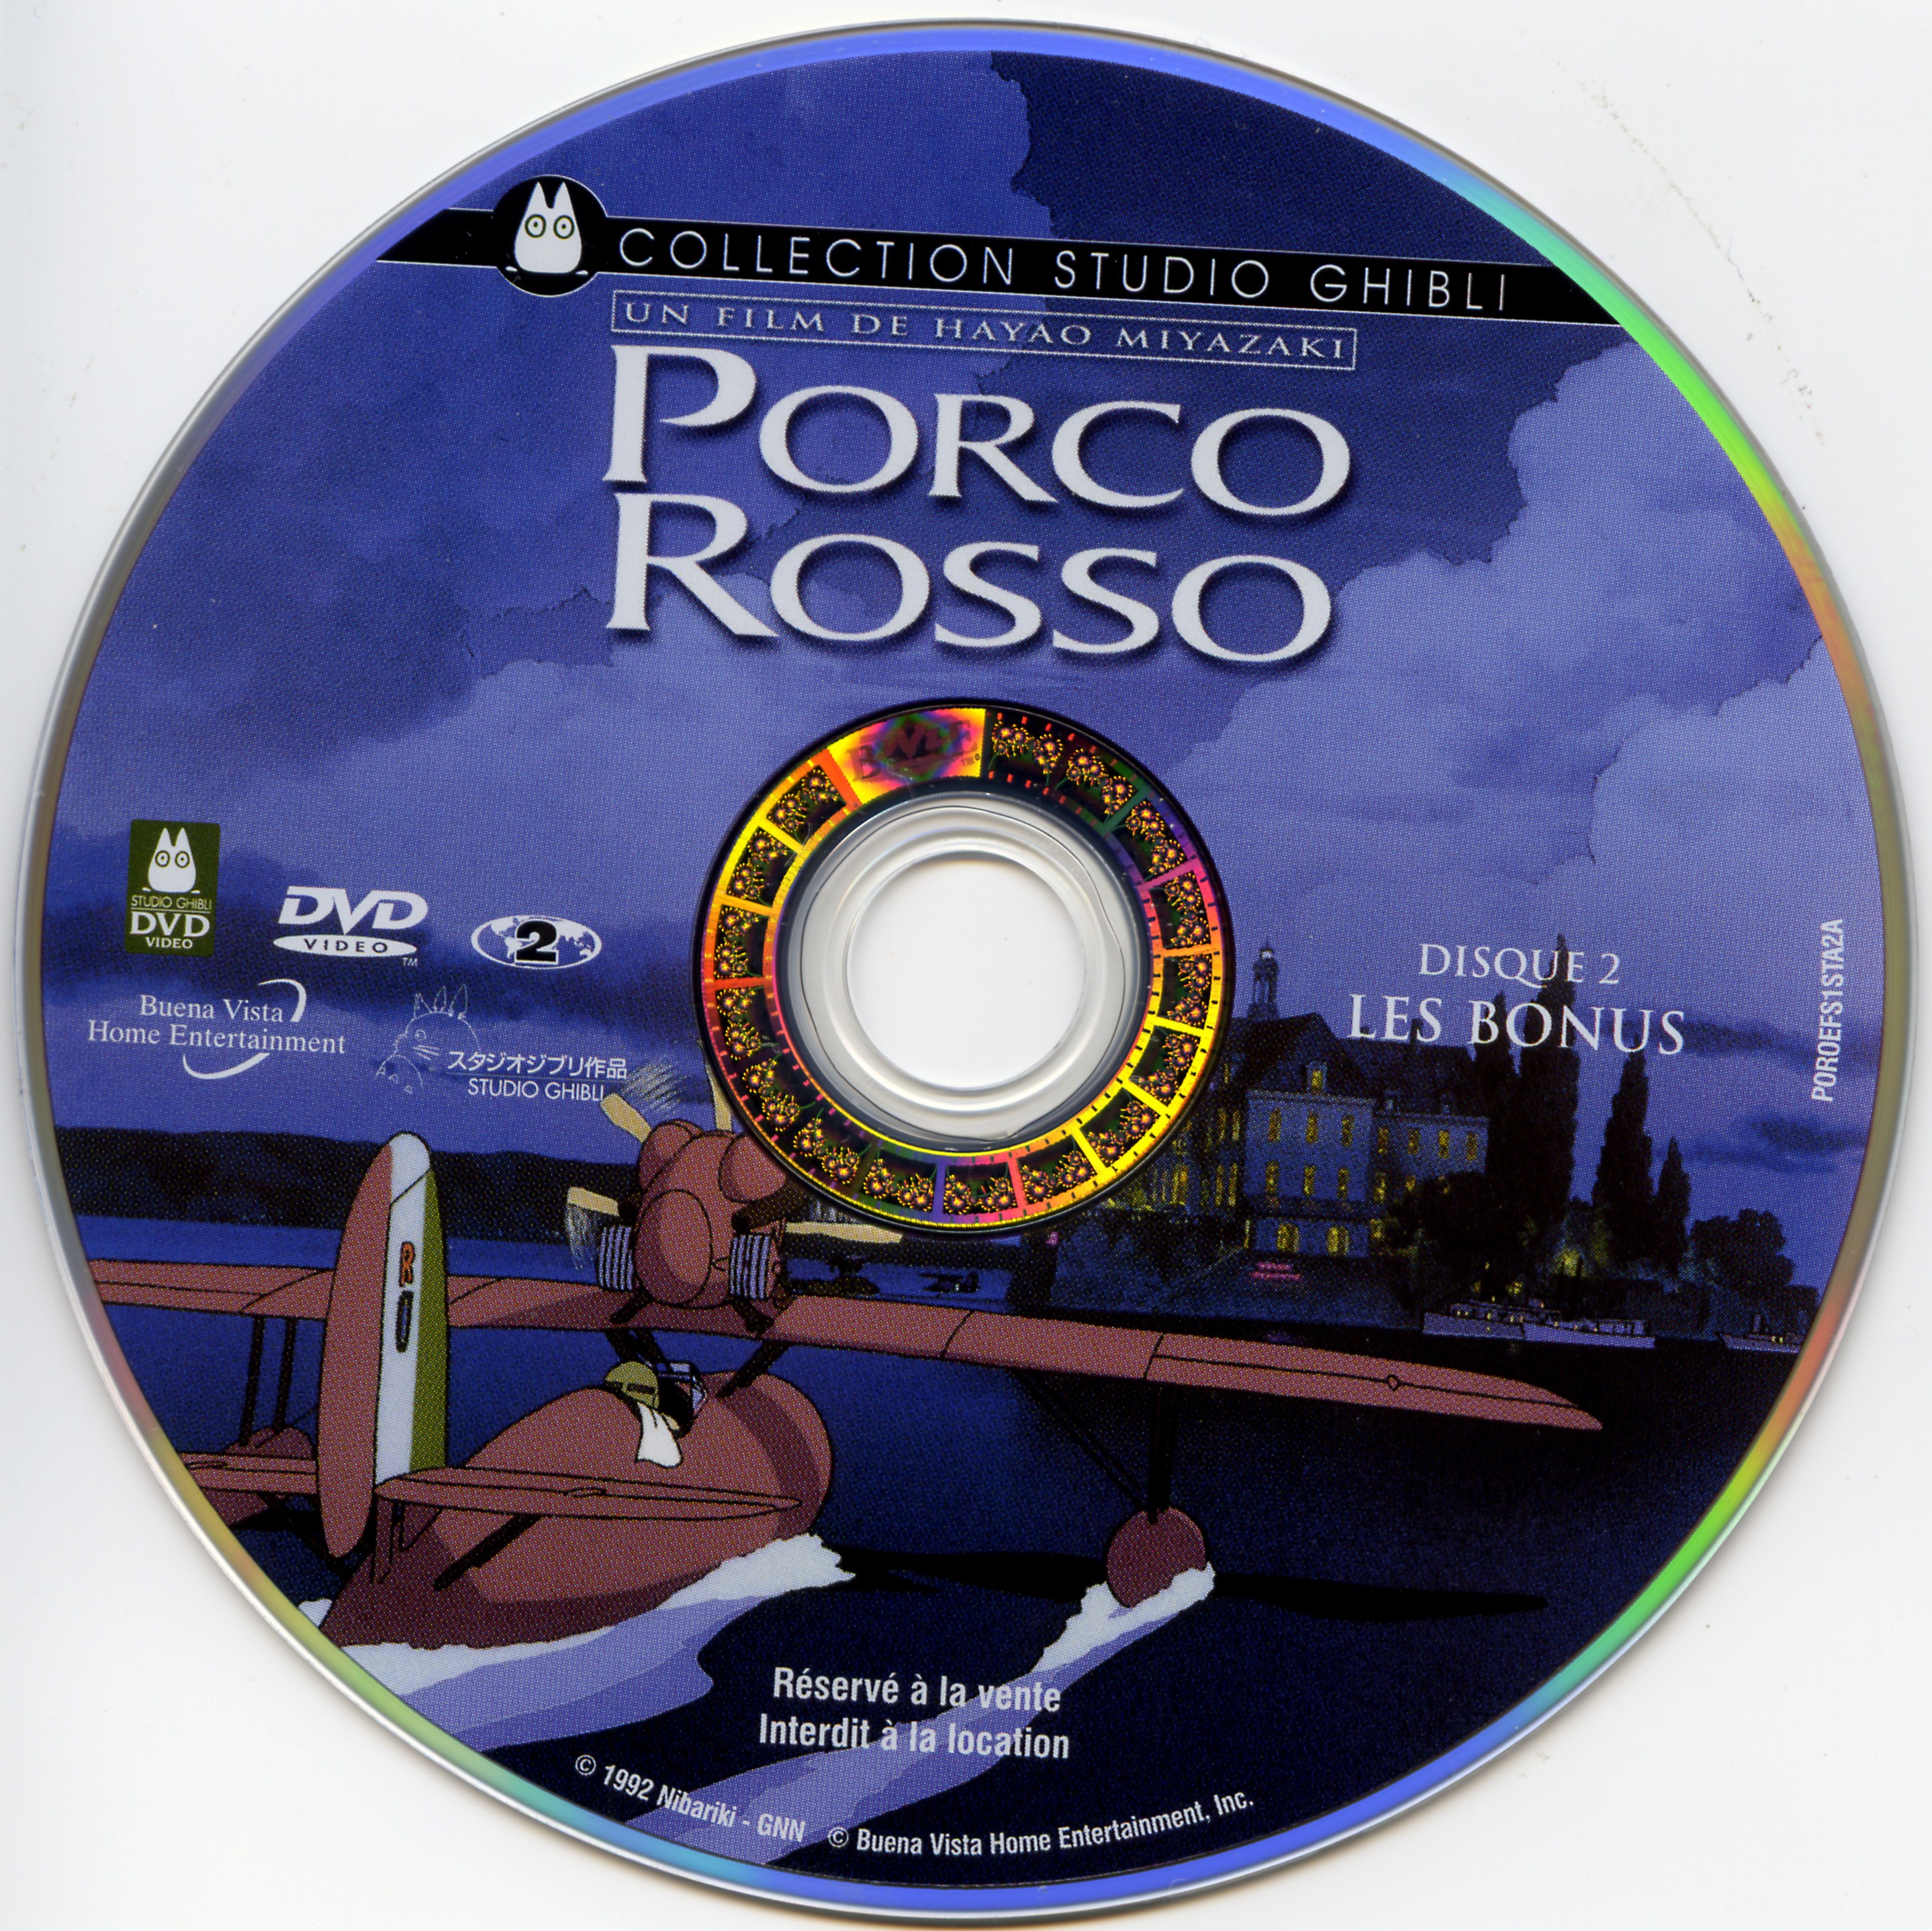 Porco Rosso DISC 2